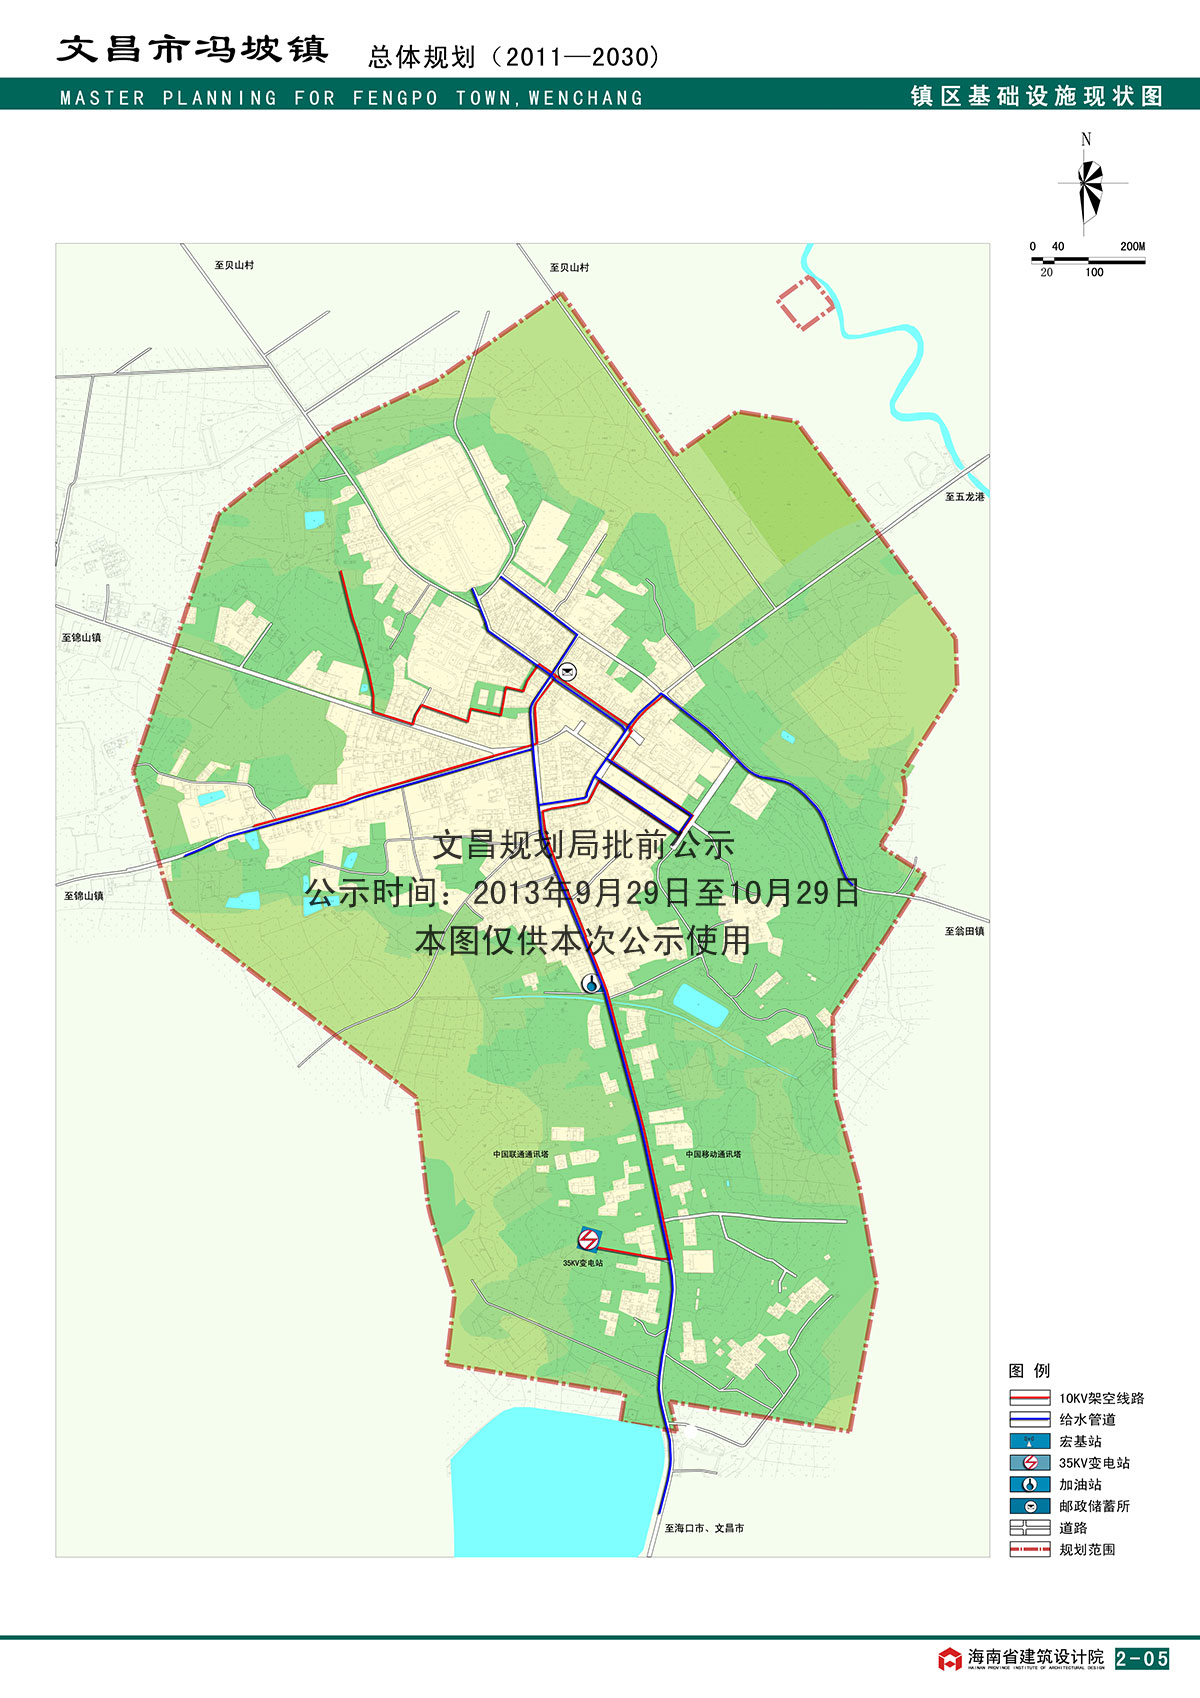 关于《文昌市冯坡镇总体规划(2011